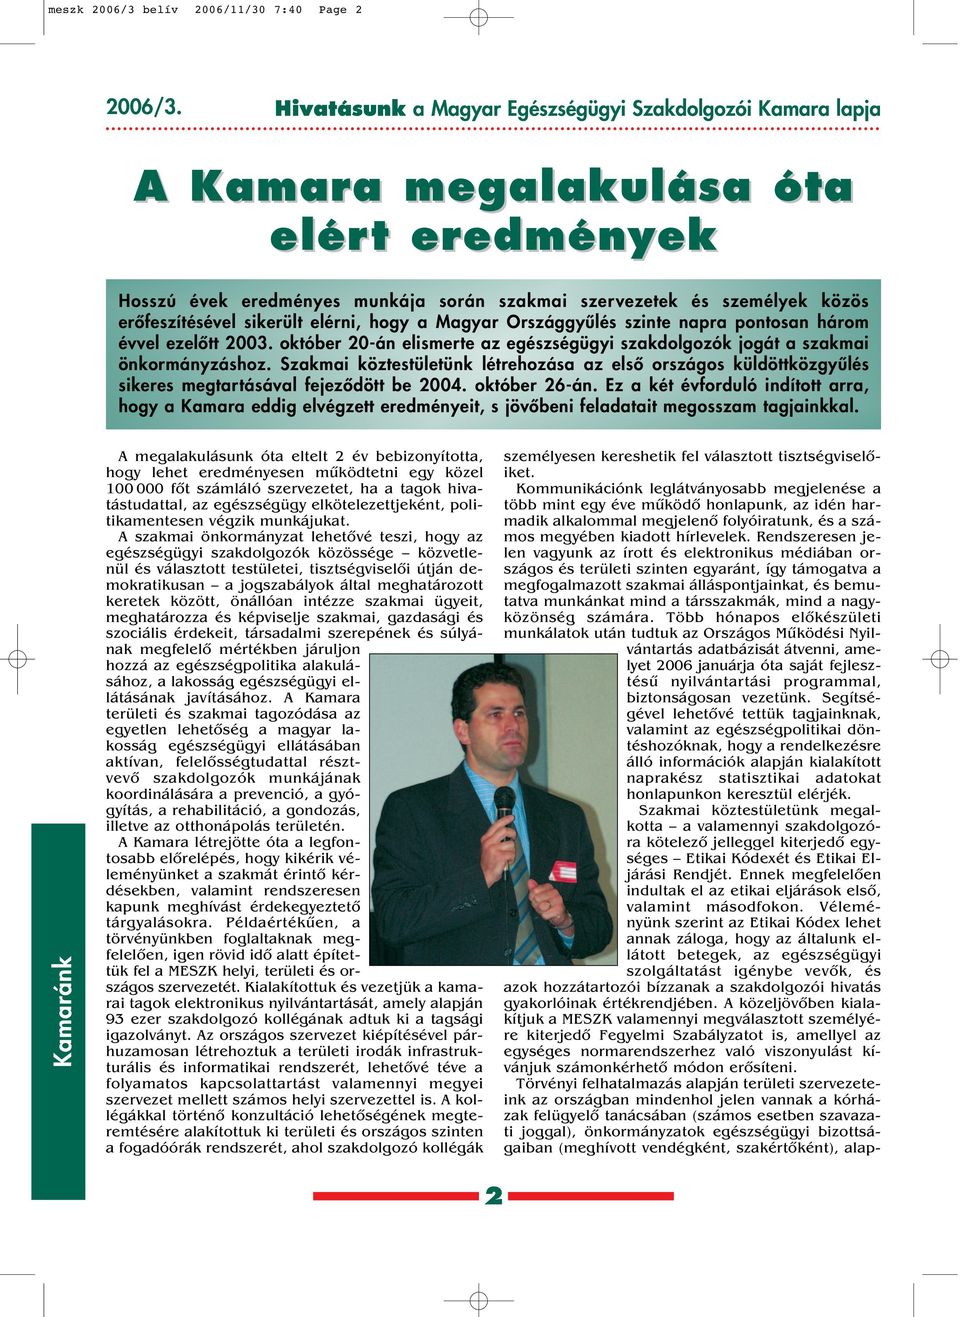 sikerült elérni, hogy a Magyar Országgyûlés szinte napra pontosan három évvel ezelôtt 2003. október 20-án elismerte az egészségügyi szakdolgozók jogát a szakmai önkormányzáshoz.